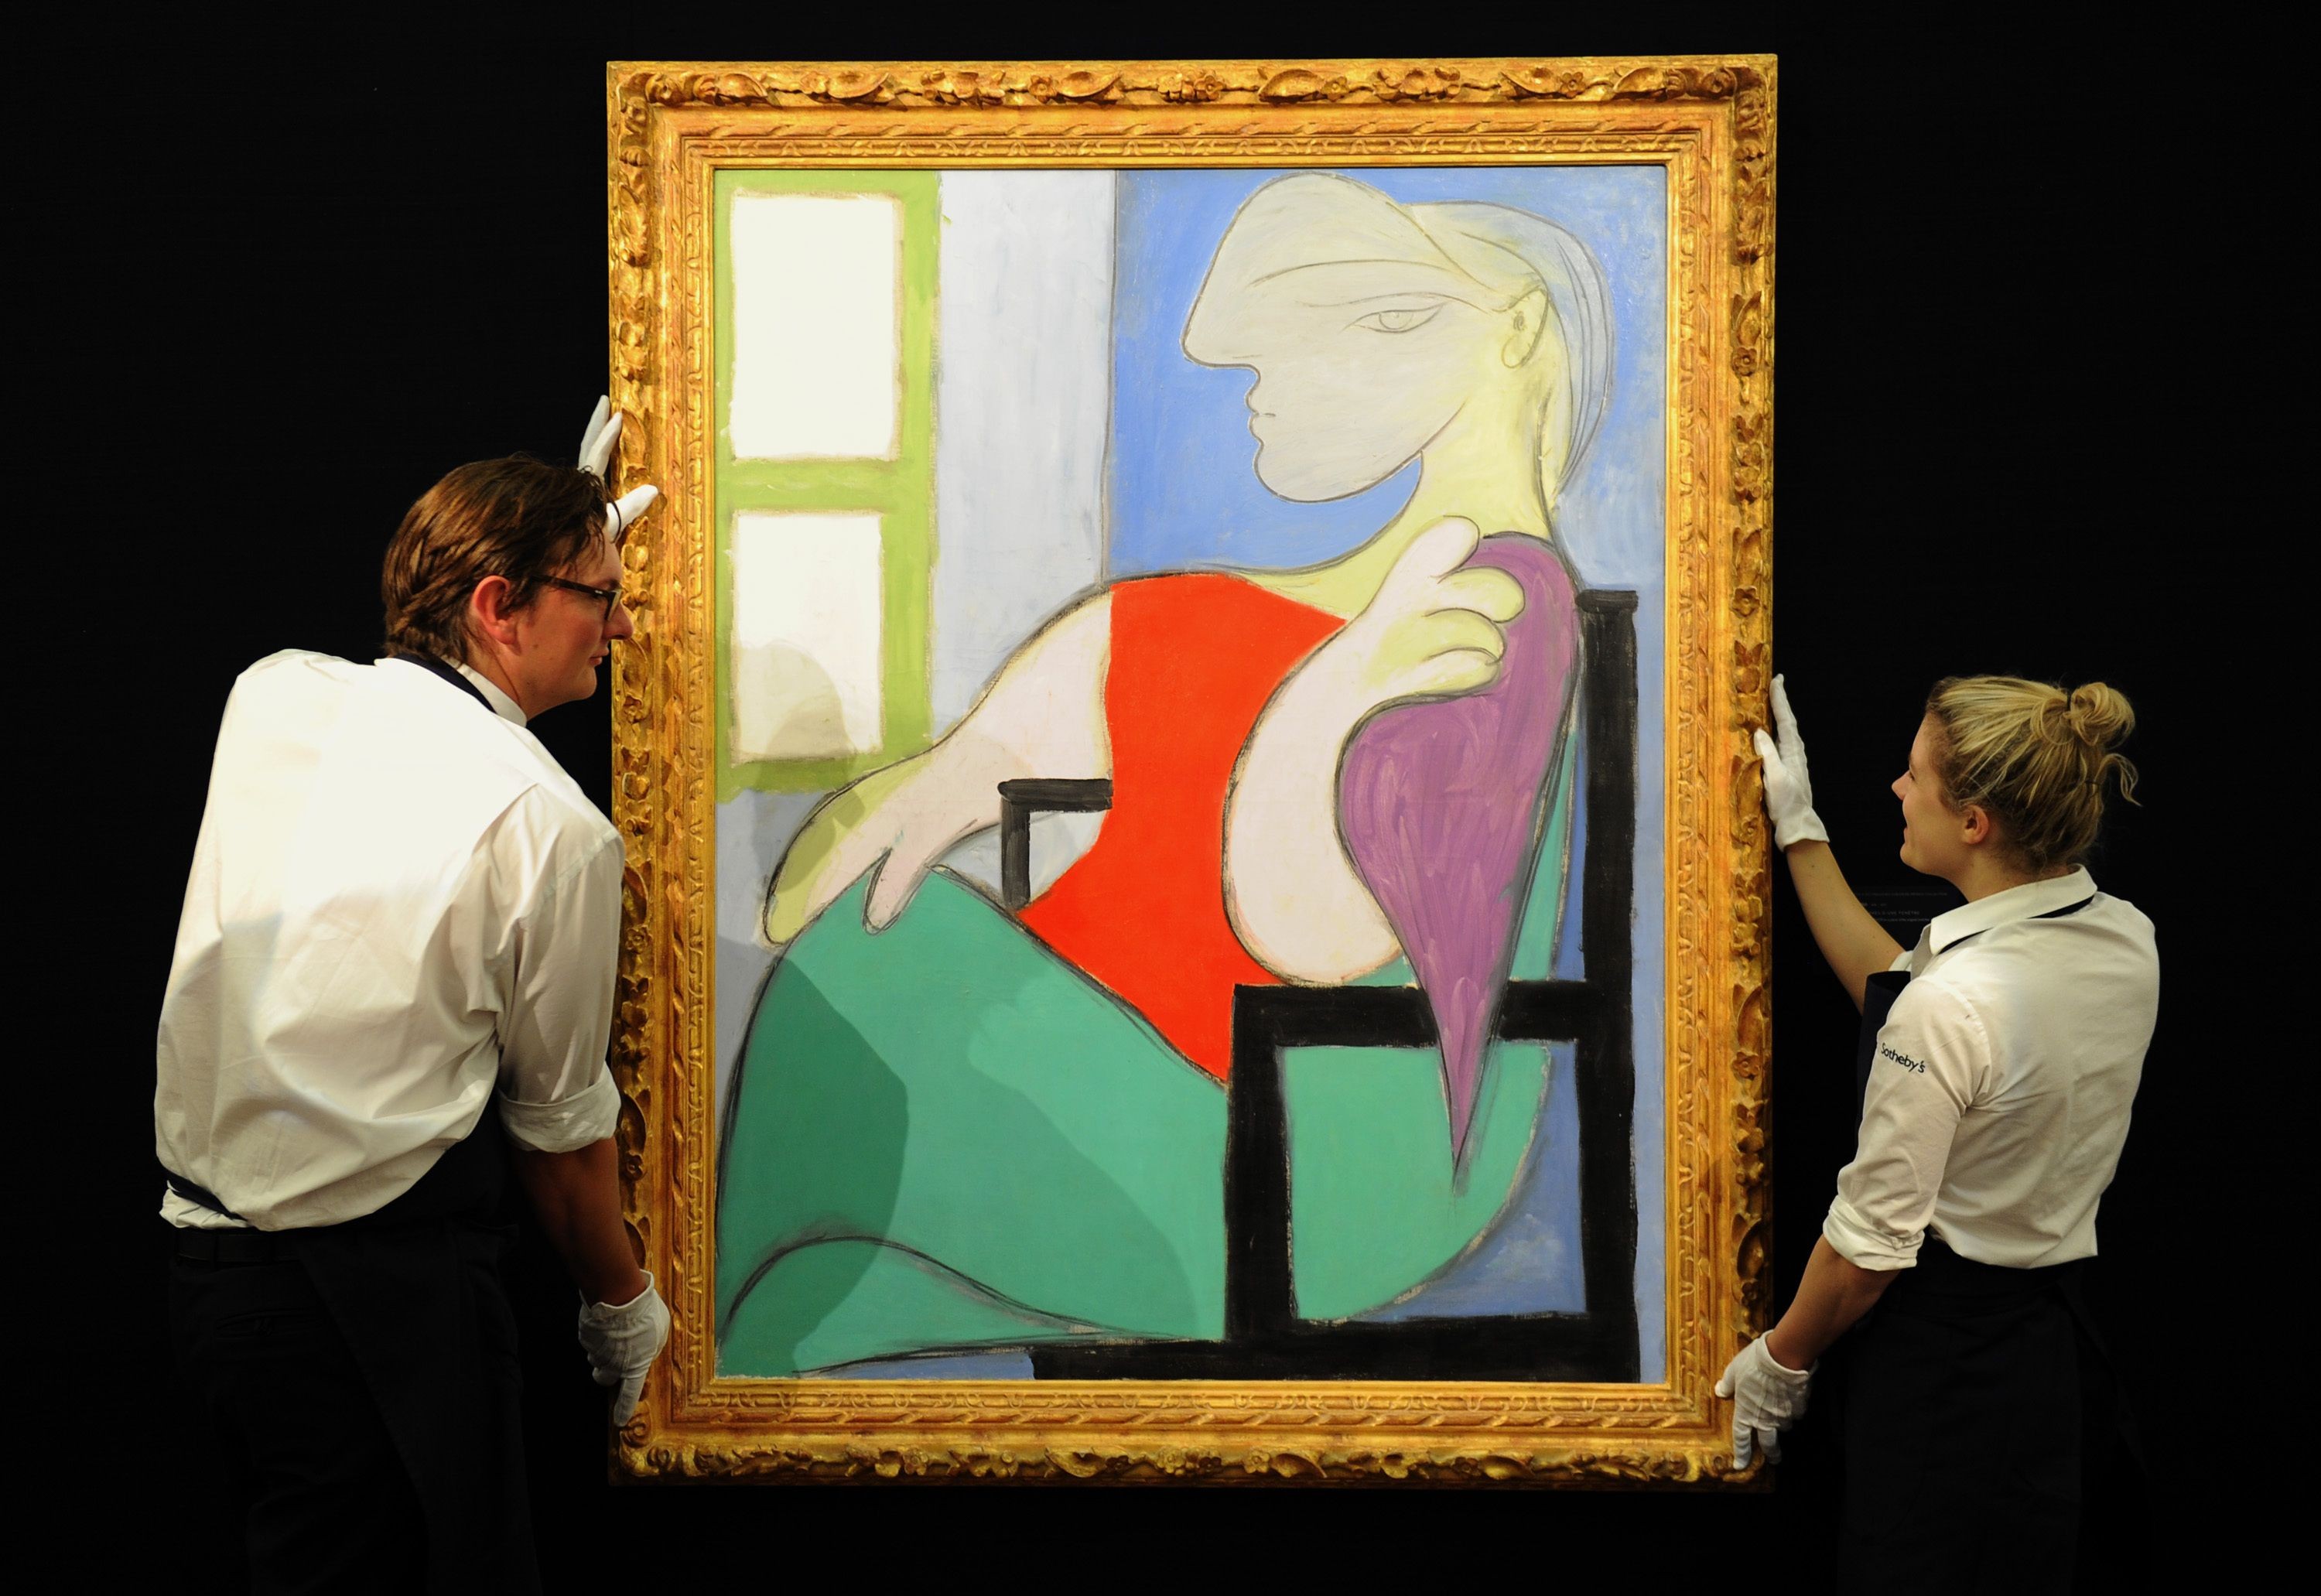 O retrato mostra Marie-Thérèse Walter, amante de Picasso, que na época tinha 17 anos (Foto: Reprodução / The Art Newspaper / Anthony Devlin)